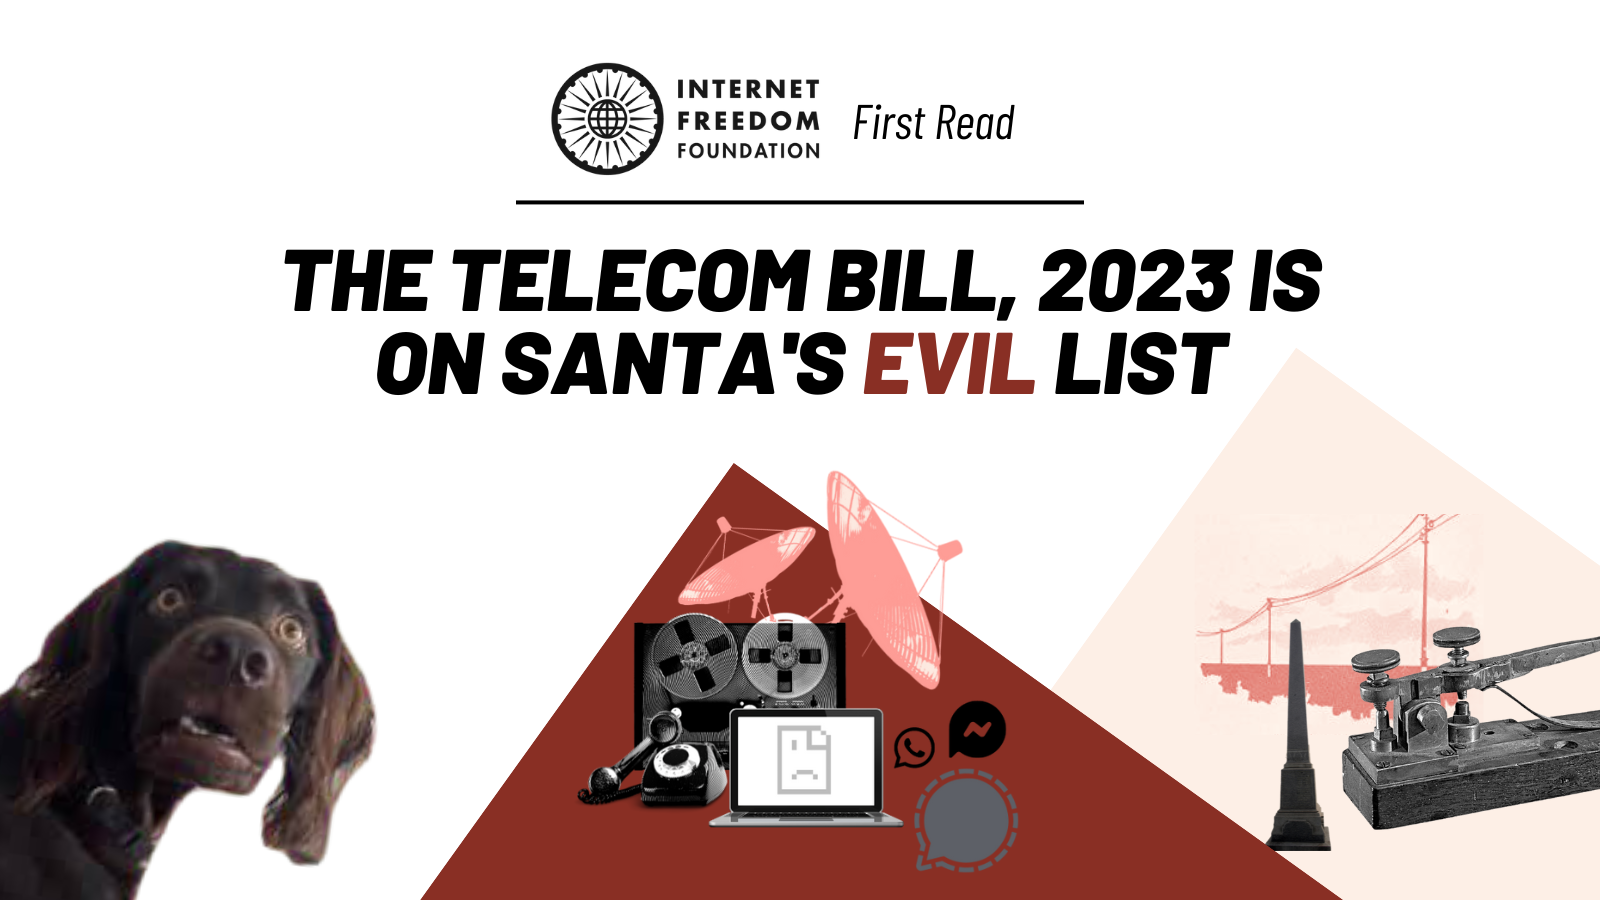 First Read: The Telecom Bill, 2023 is on Santa's evil list